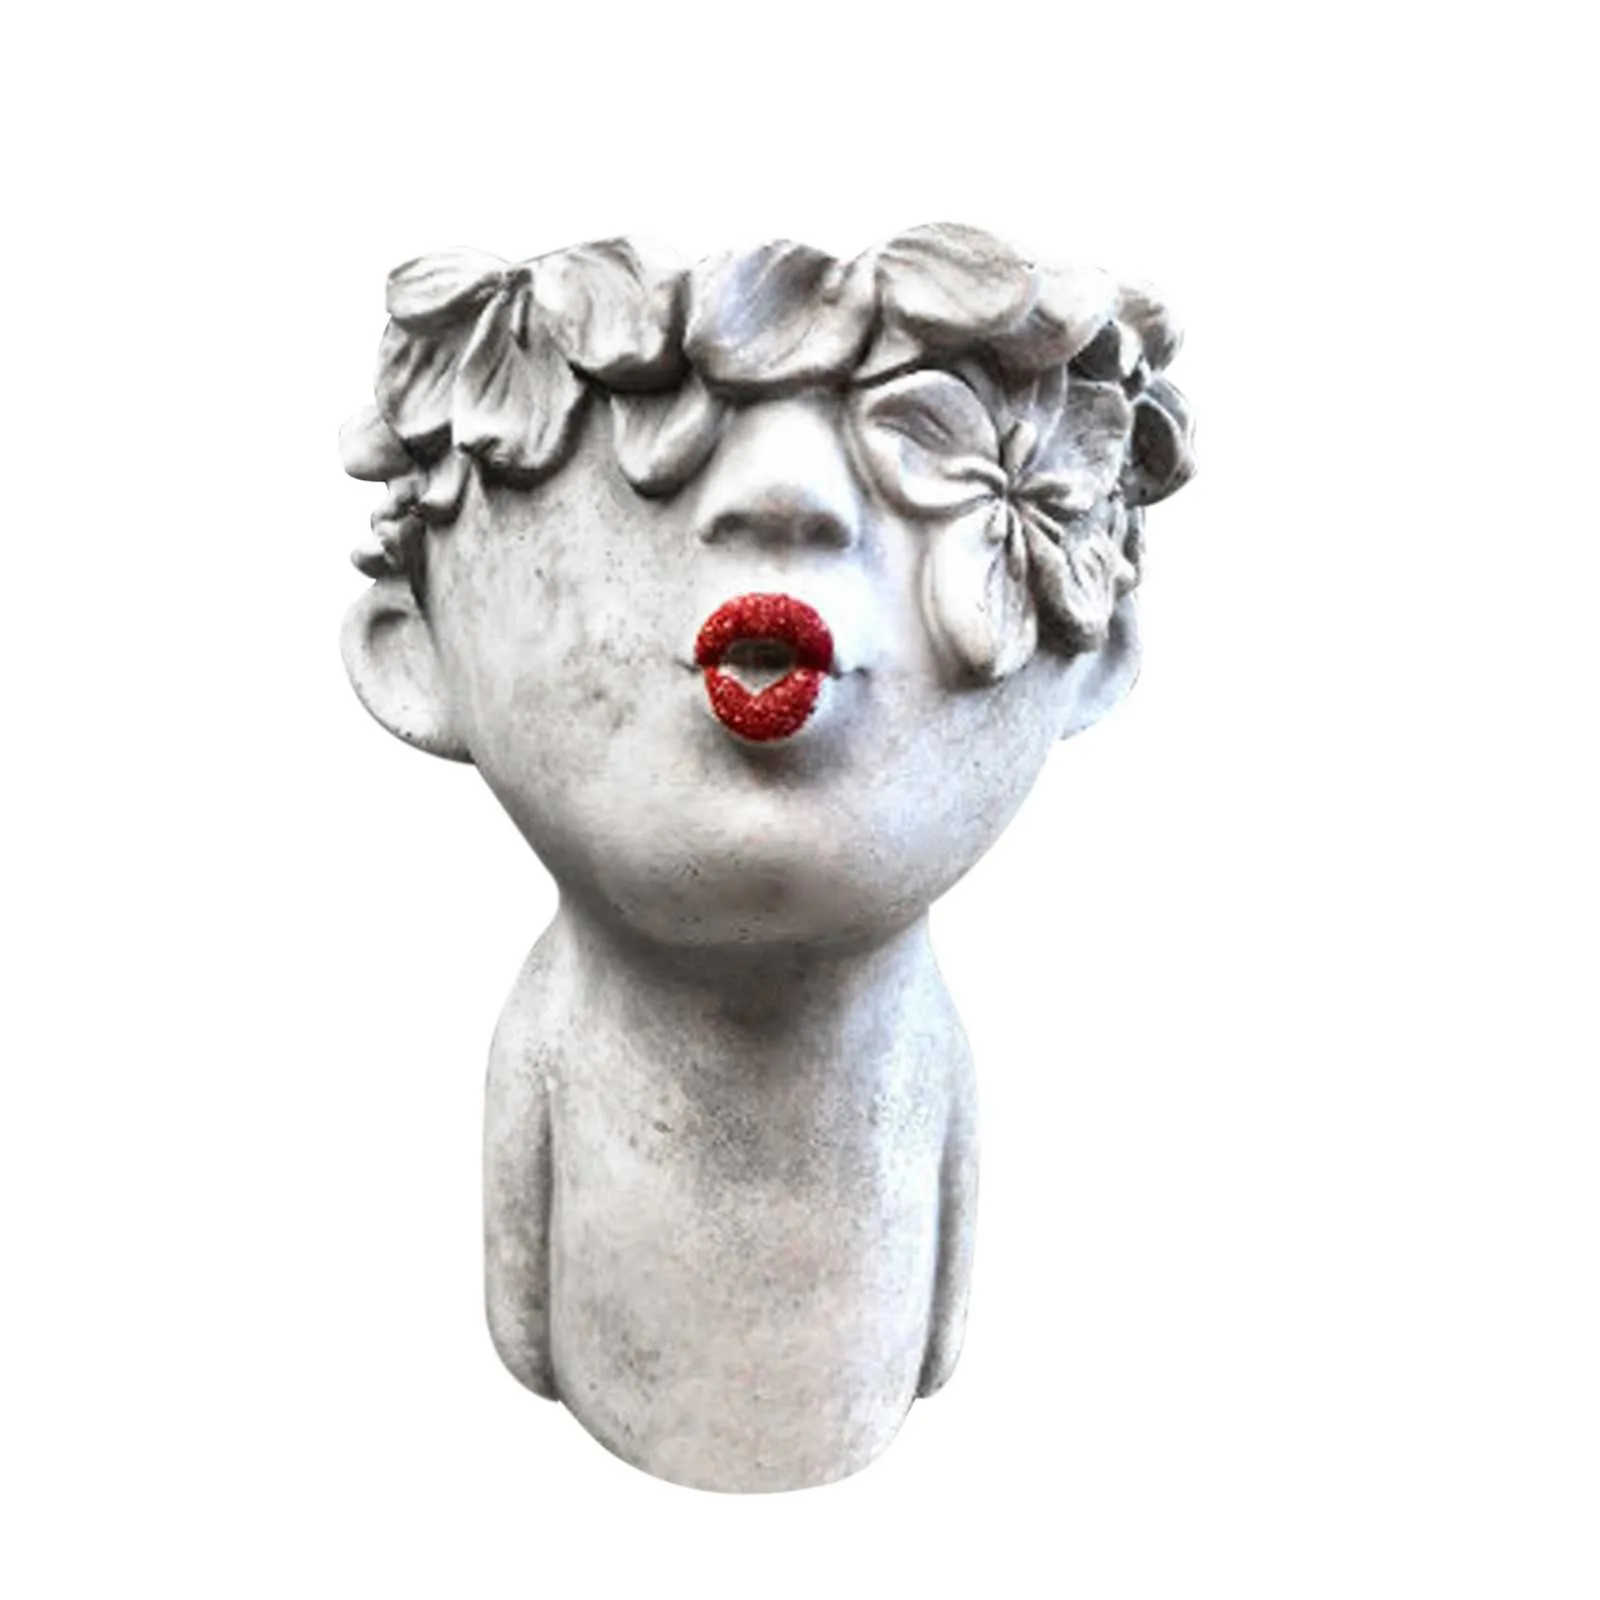 Piccole donne che si baciano vasi da fiori labbra dipinte figurine con testa rossa fioriera da giardino carino vaso di fiori regalo decorazione della casa 210712317b